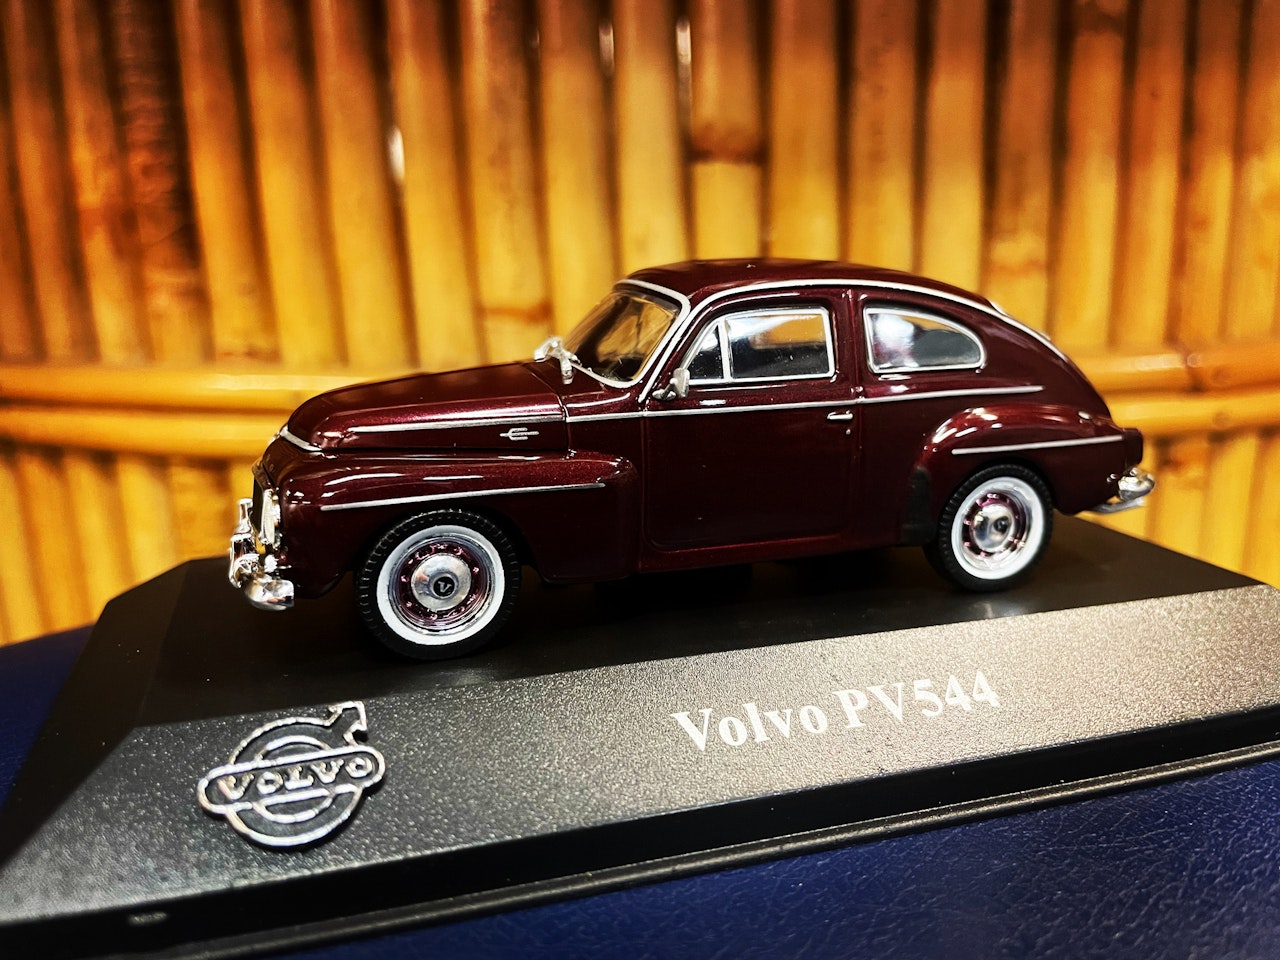 Volvo Pv 544